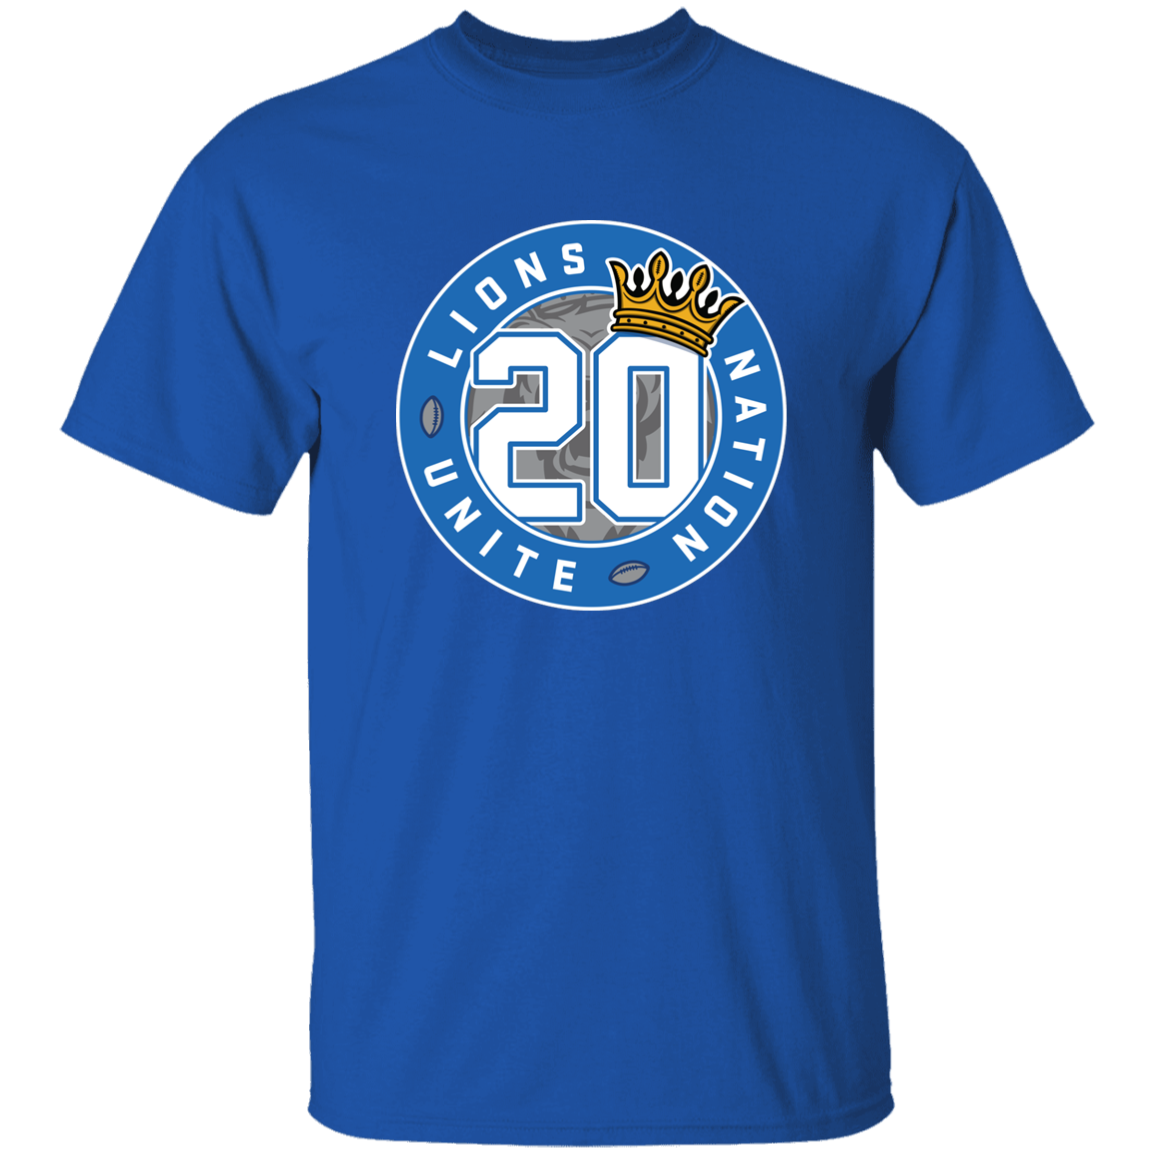 No. 20 Lions Nation Unite® Men's T-Shirt